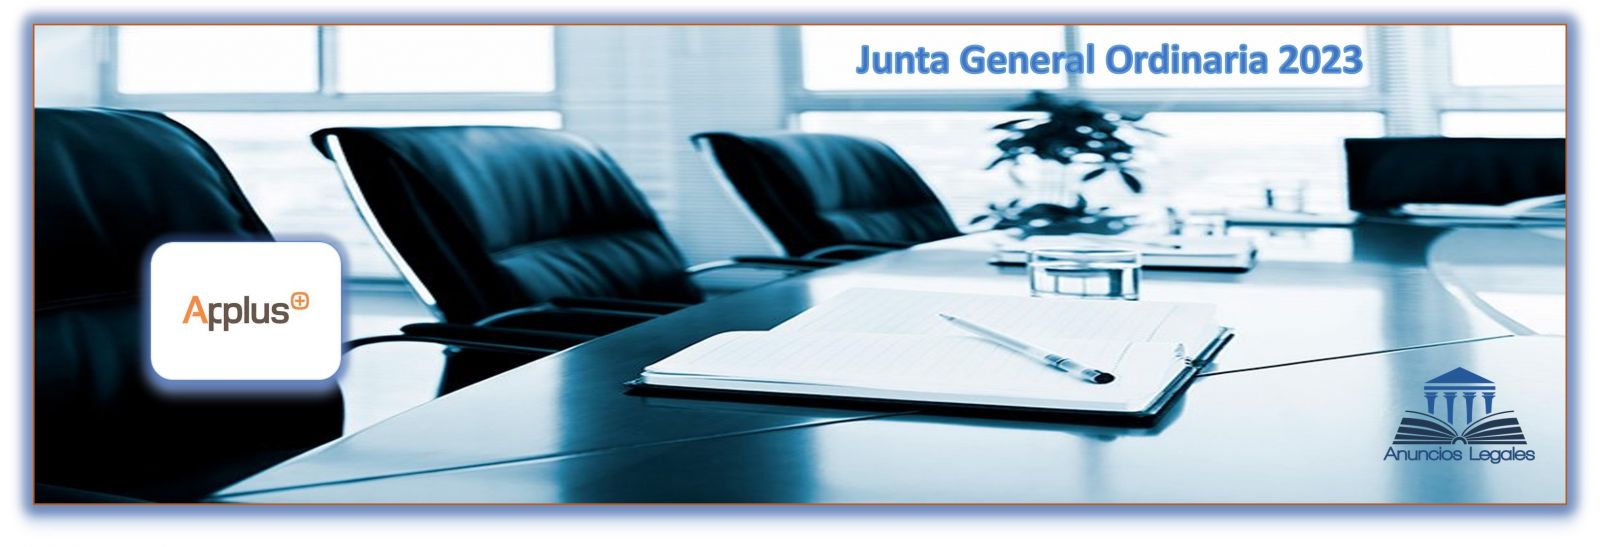 La sociedad Applus Services anuncia Junta General Ordinaria de Accionistas 2023